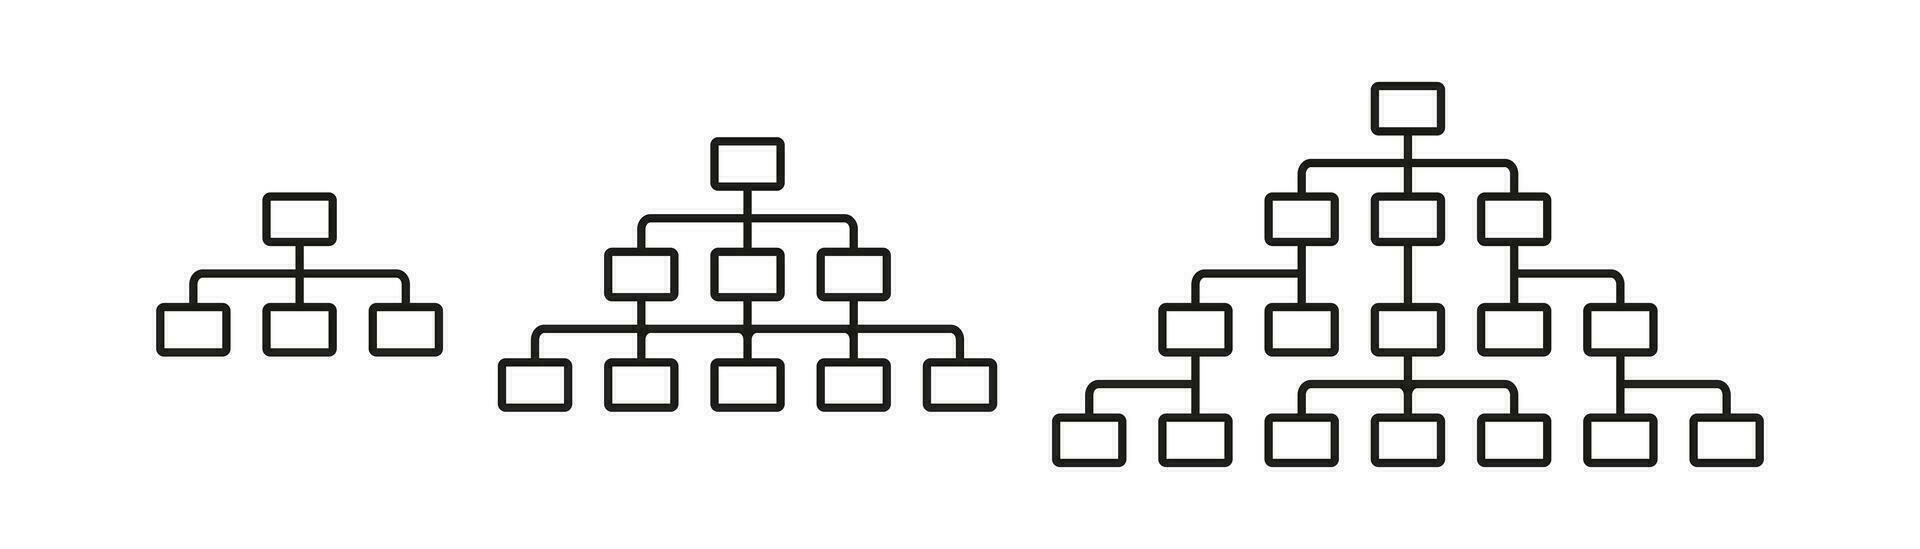 Organisation Diagramm Symbol. Vektor Illustration Gestaltung.